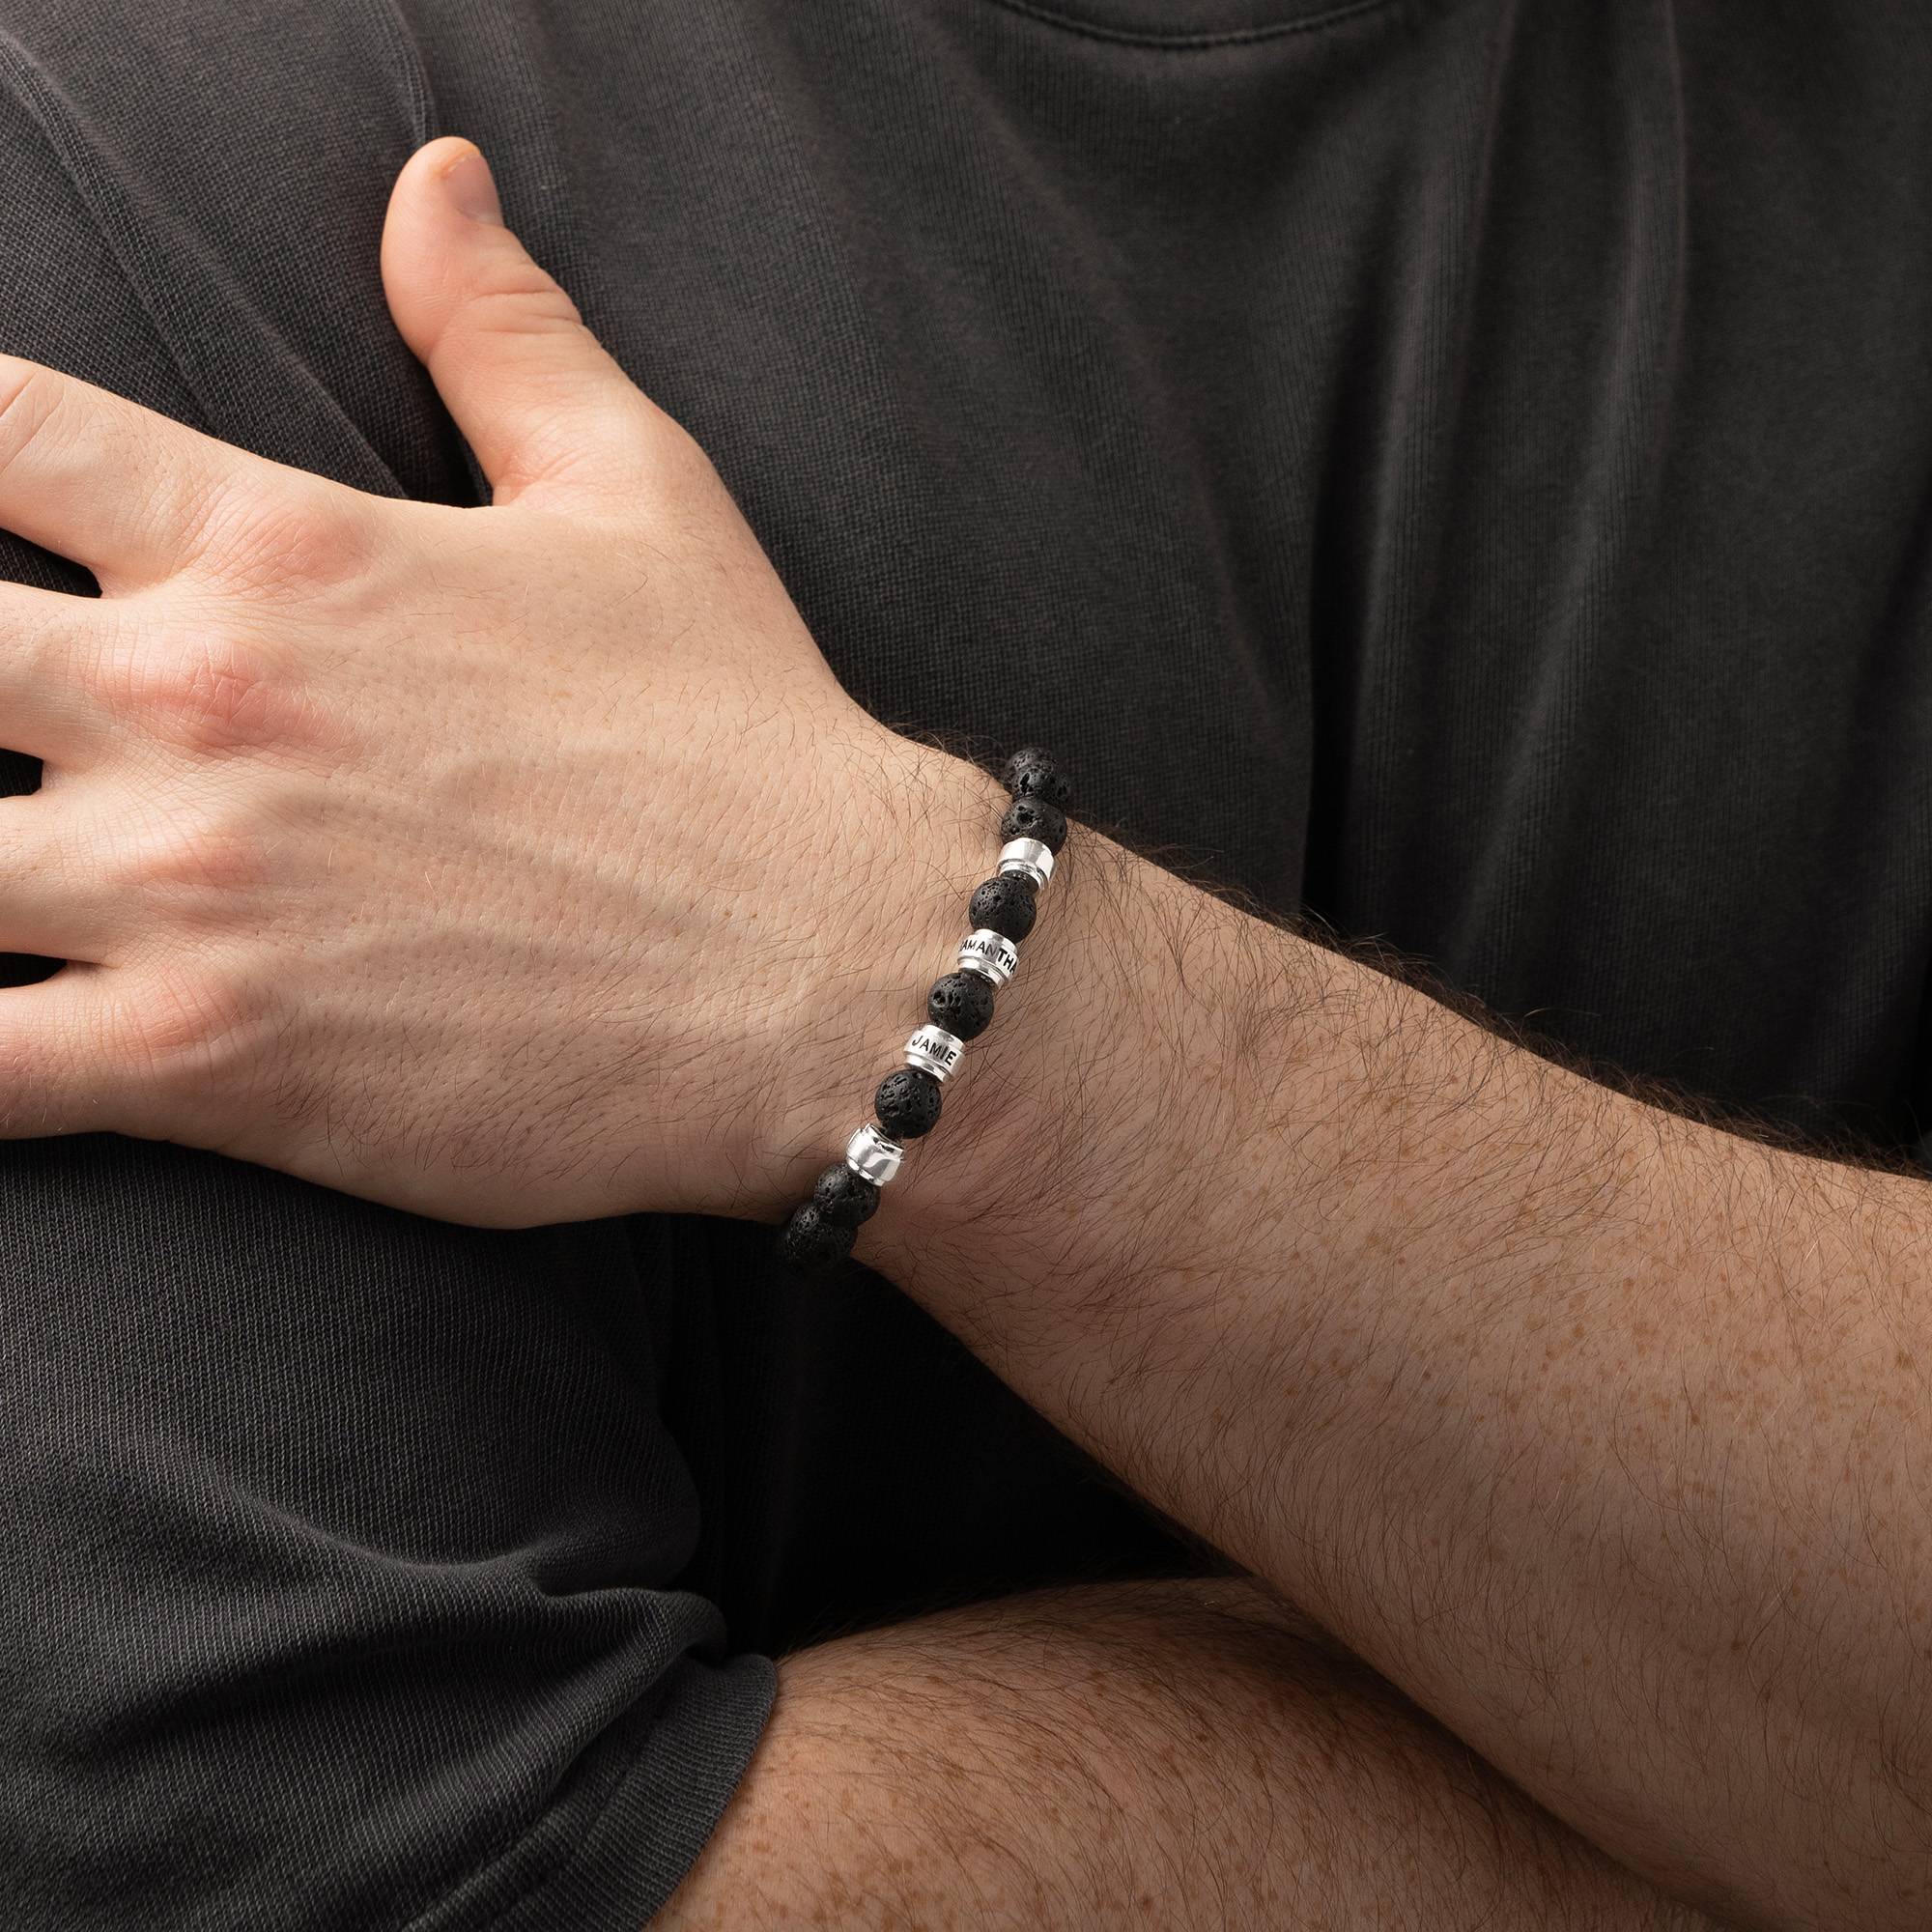 Jack Lavastein Herrenarmband mit personalisierten silbernen Beads-1 Produktfoto